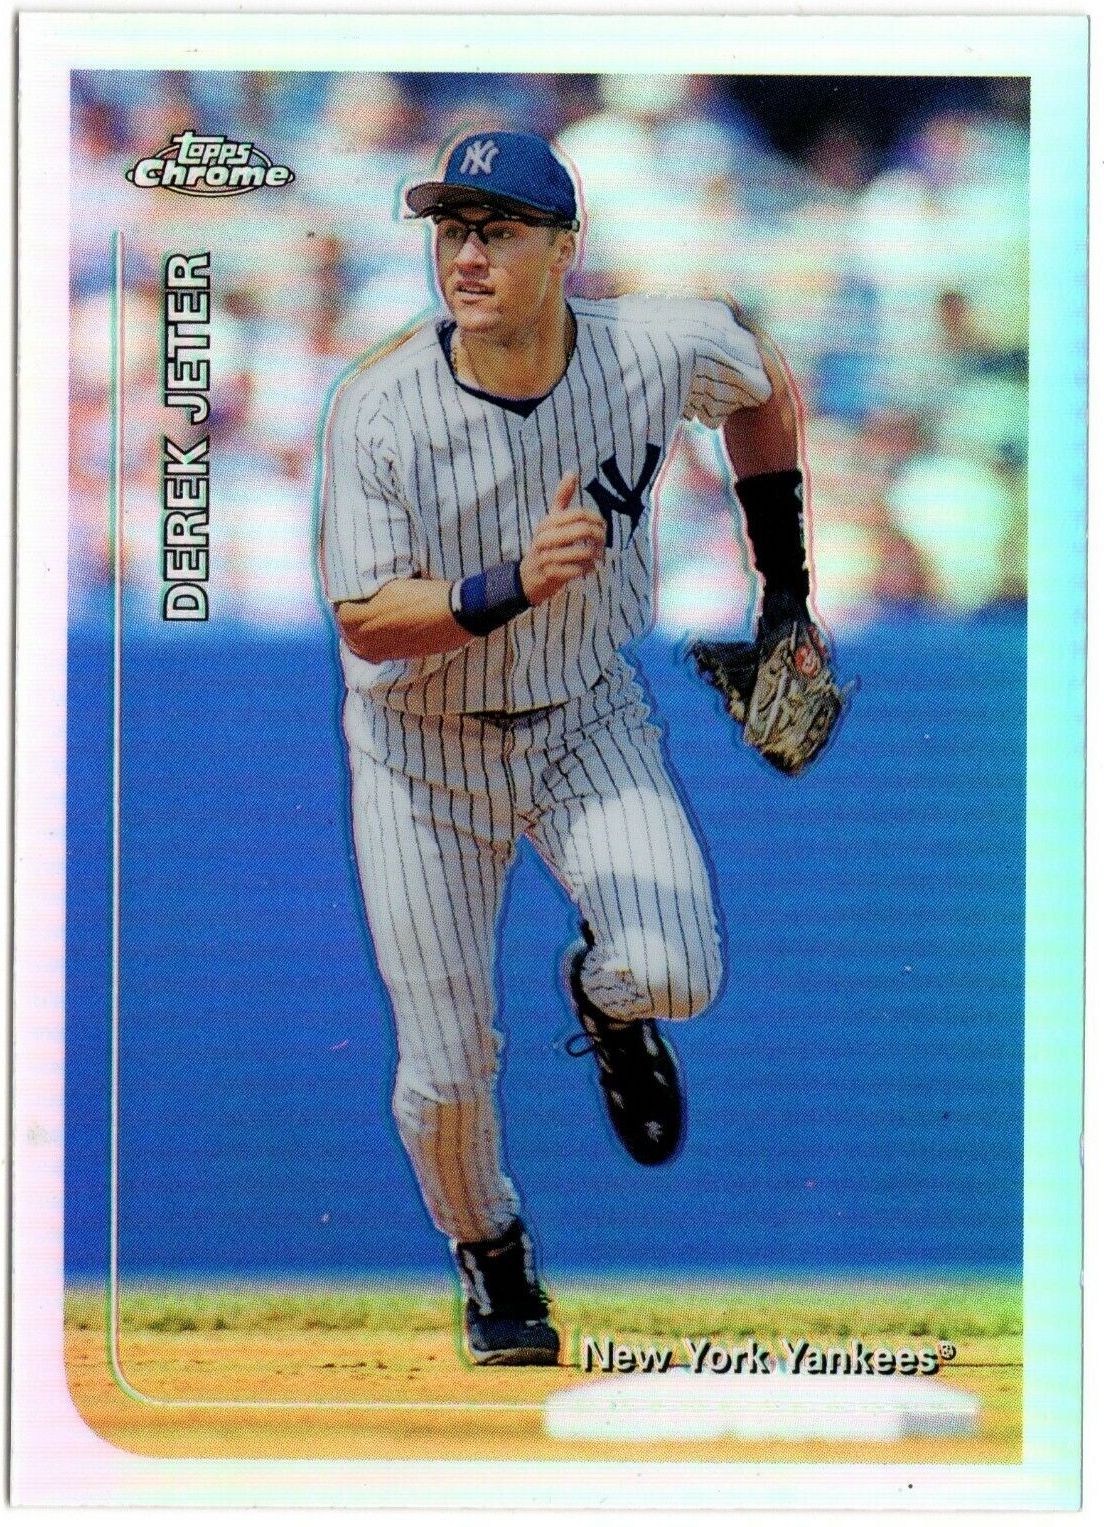 Topps Chrome Derek Jeter, New York Yankees, sports card